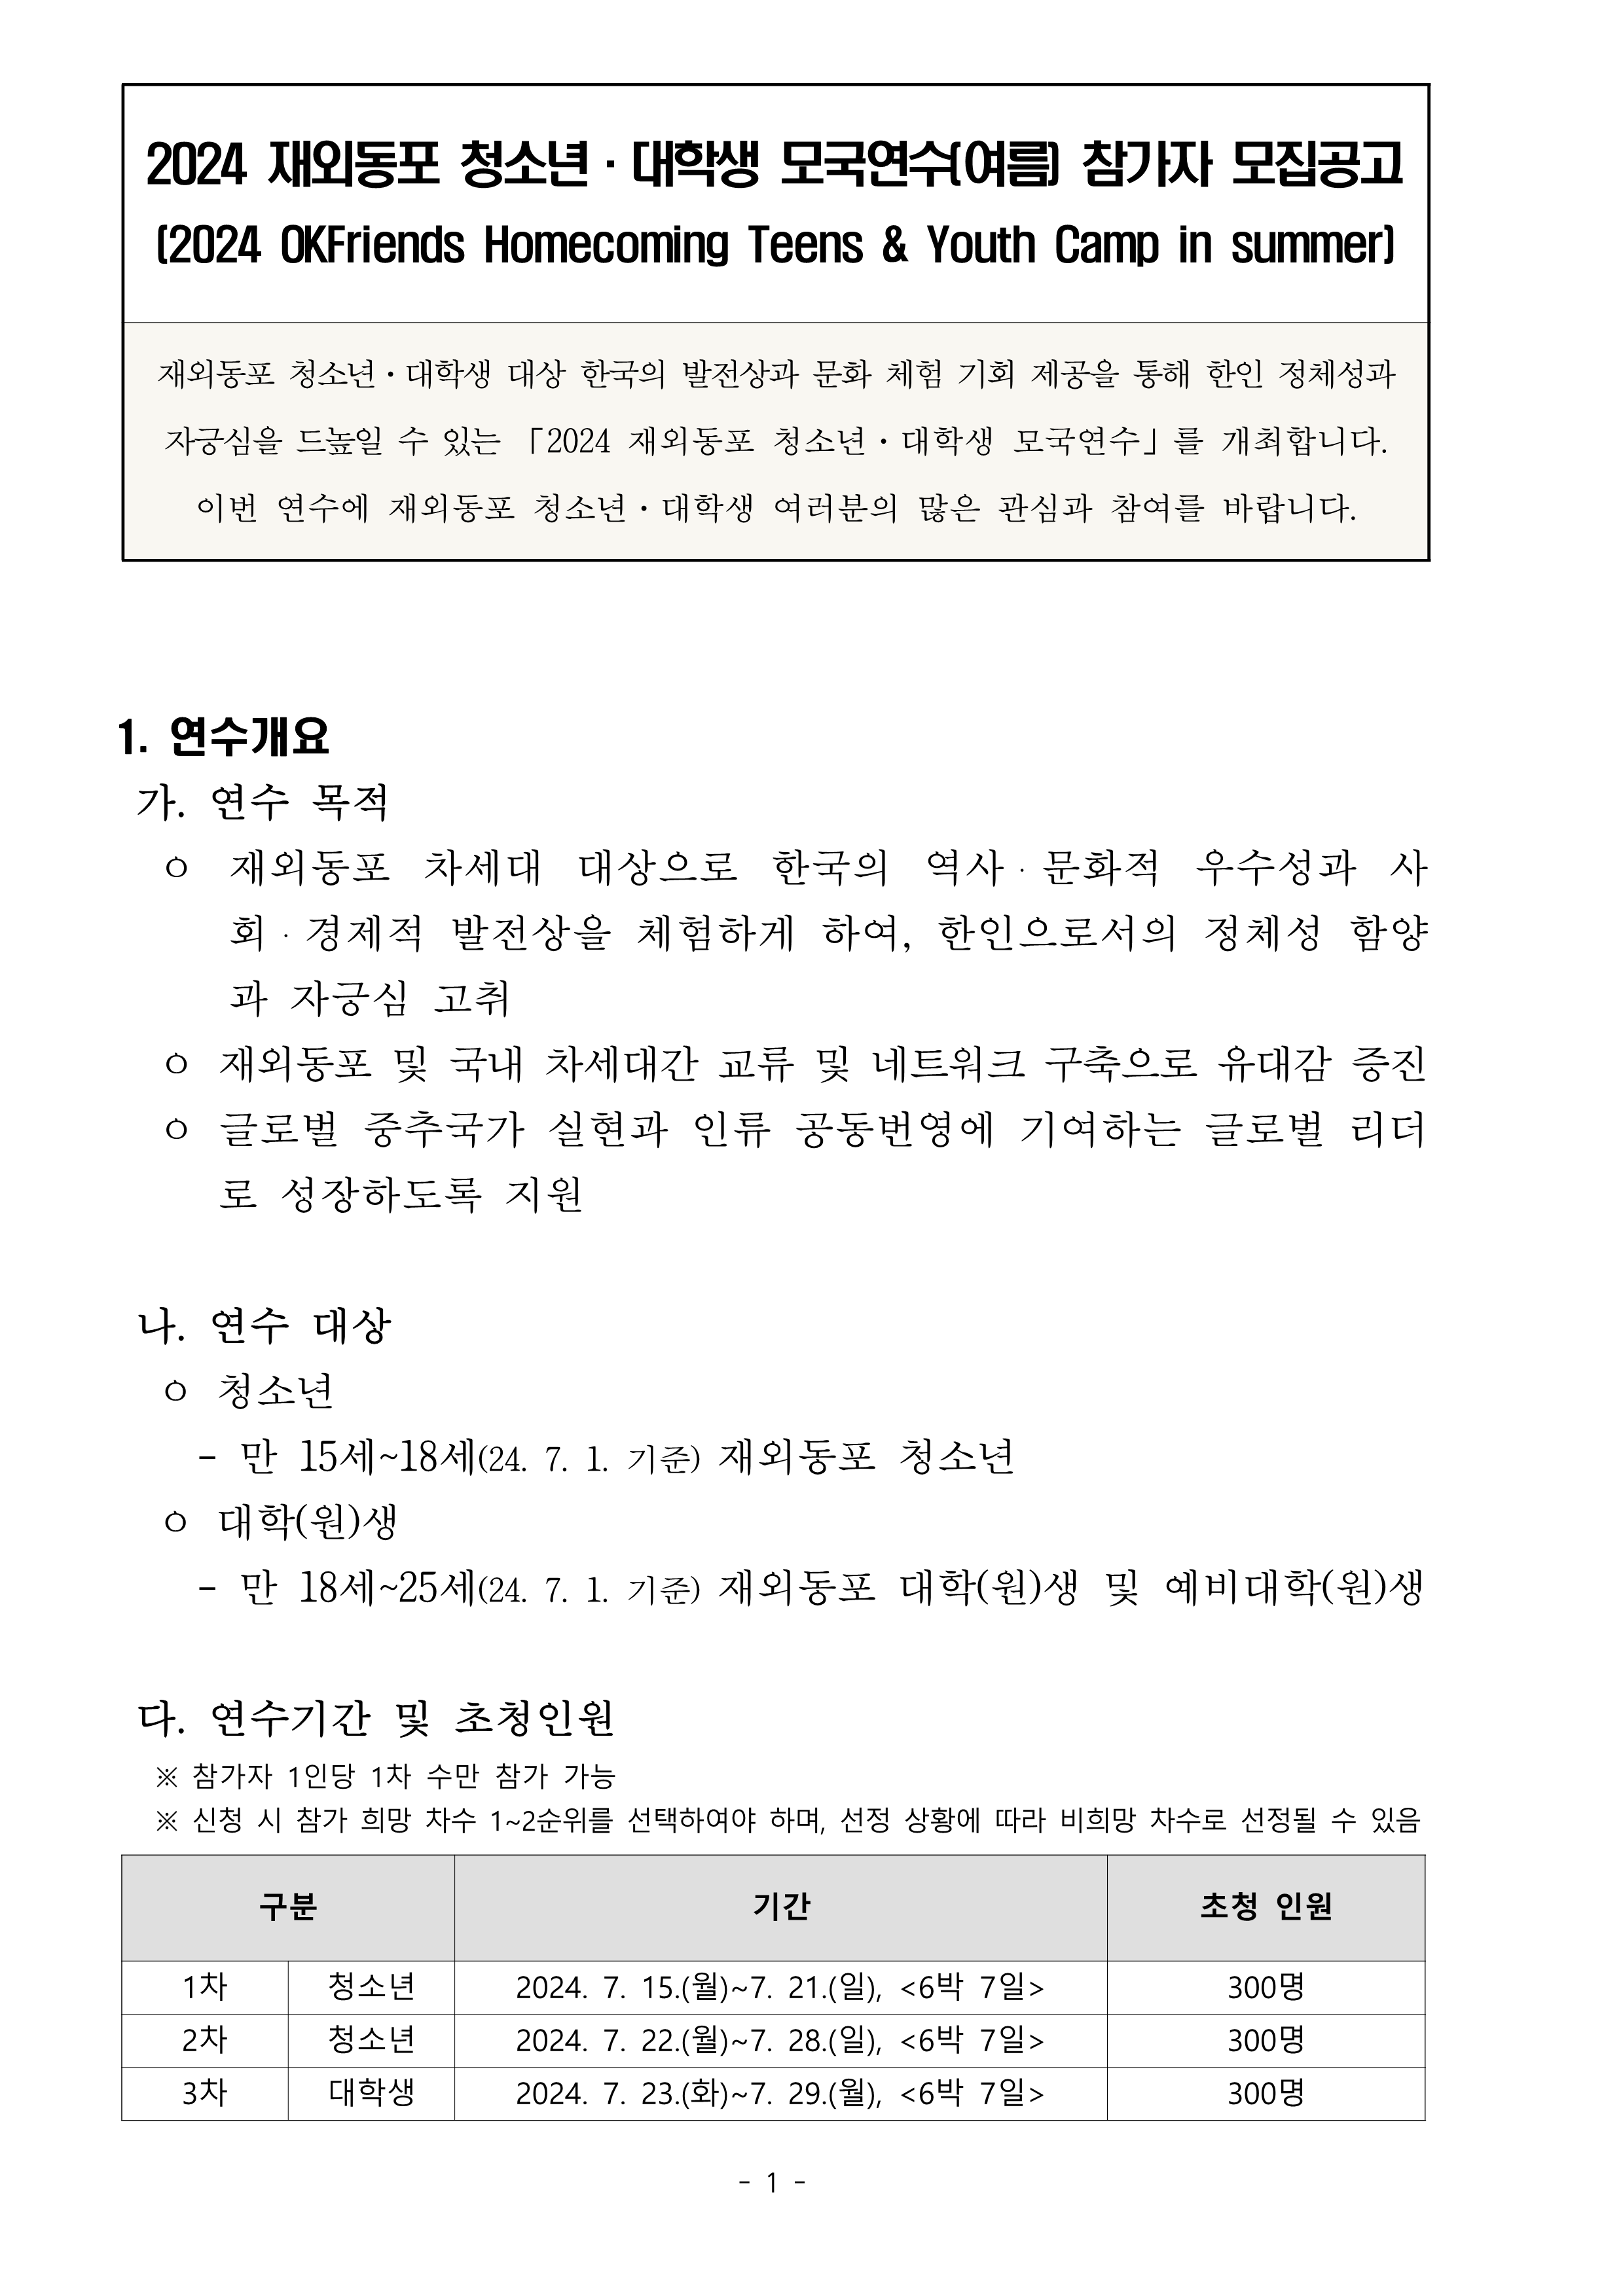 TalkFile_1. (Korean) 2024 재외동포 청소년·대학생 모국연수 참가자 모집공고.pdf_1.png